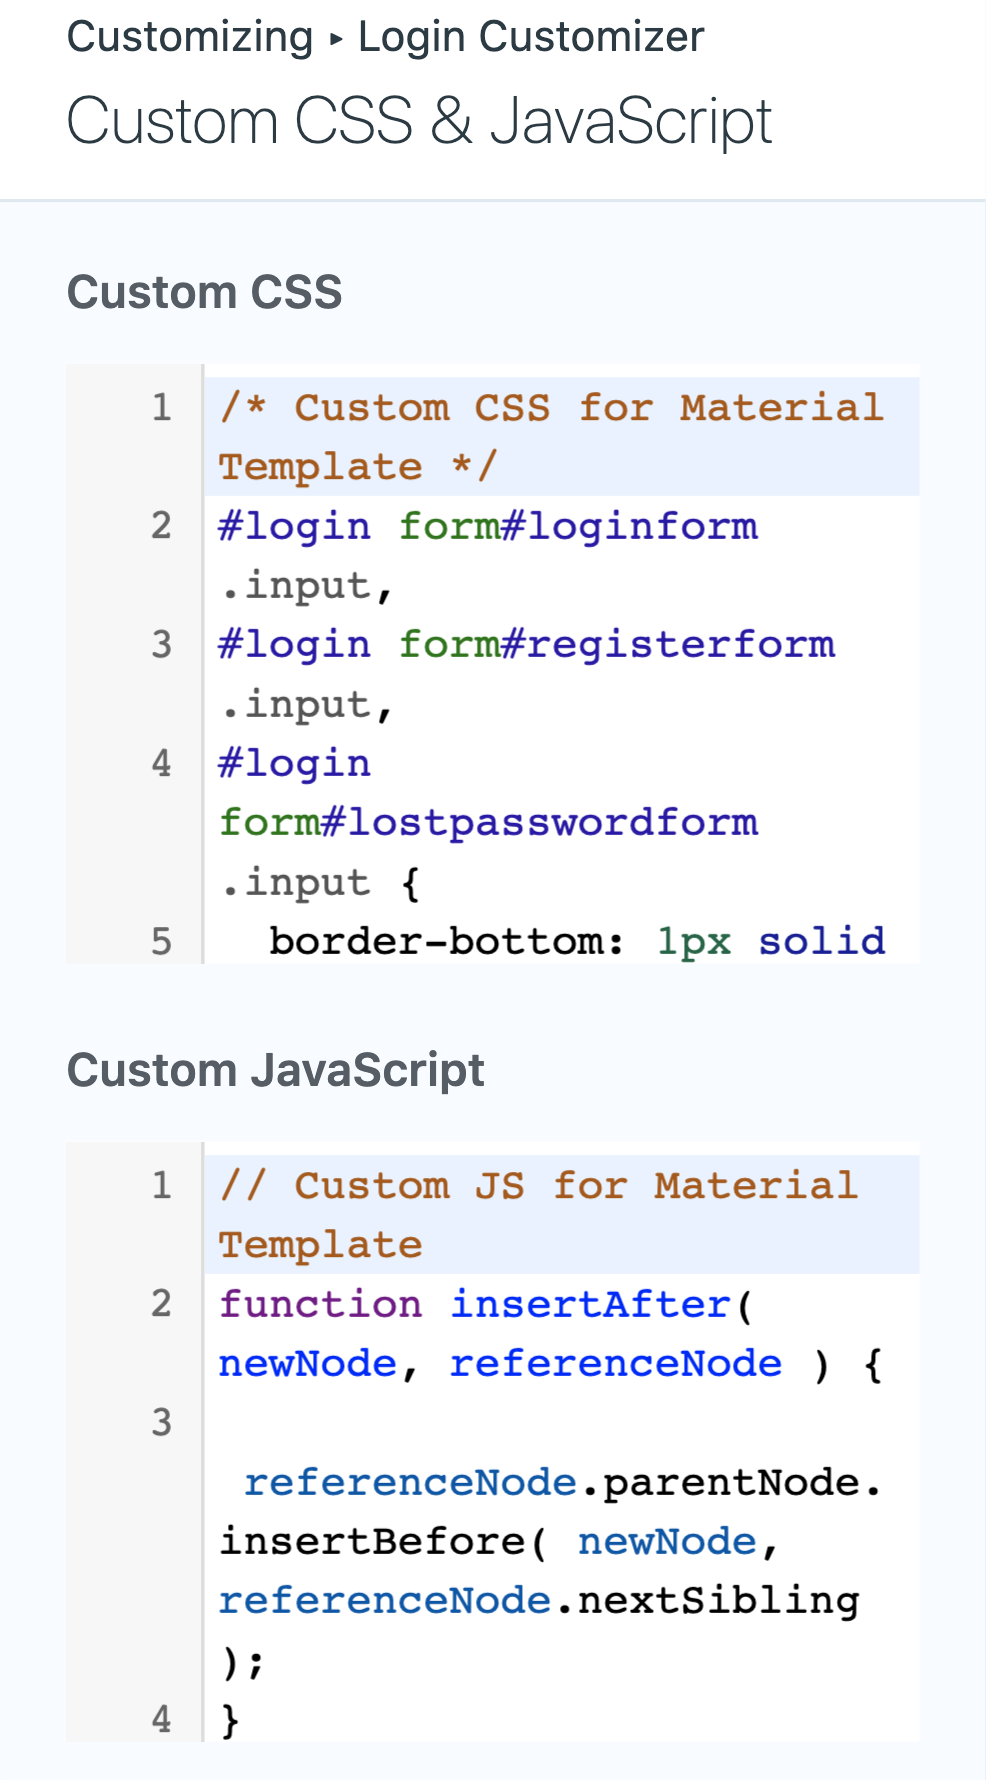 Login Customizer Custom CSS & JavaScript settings